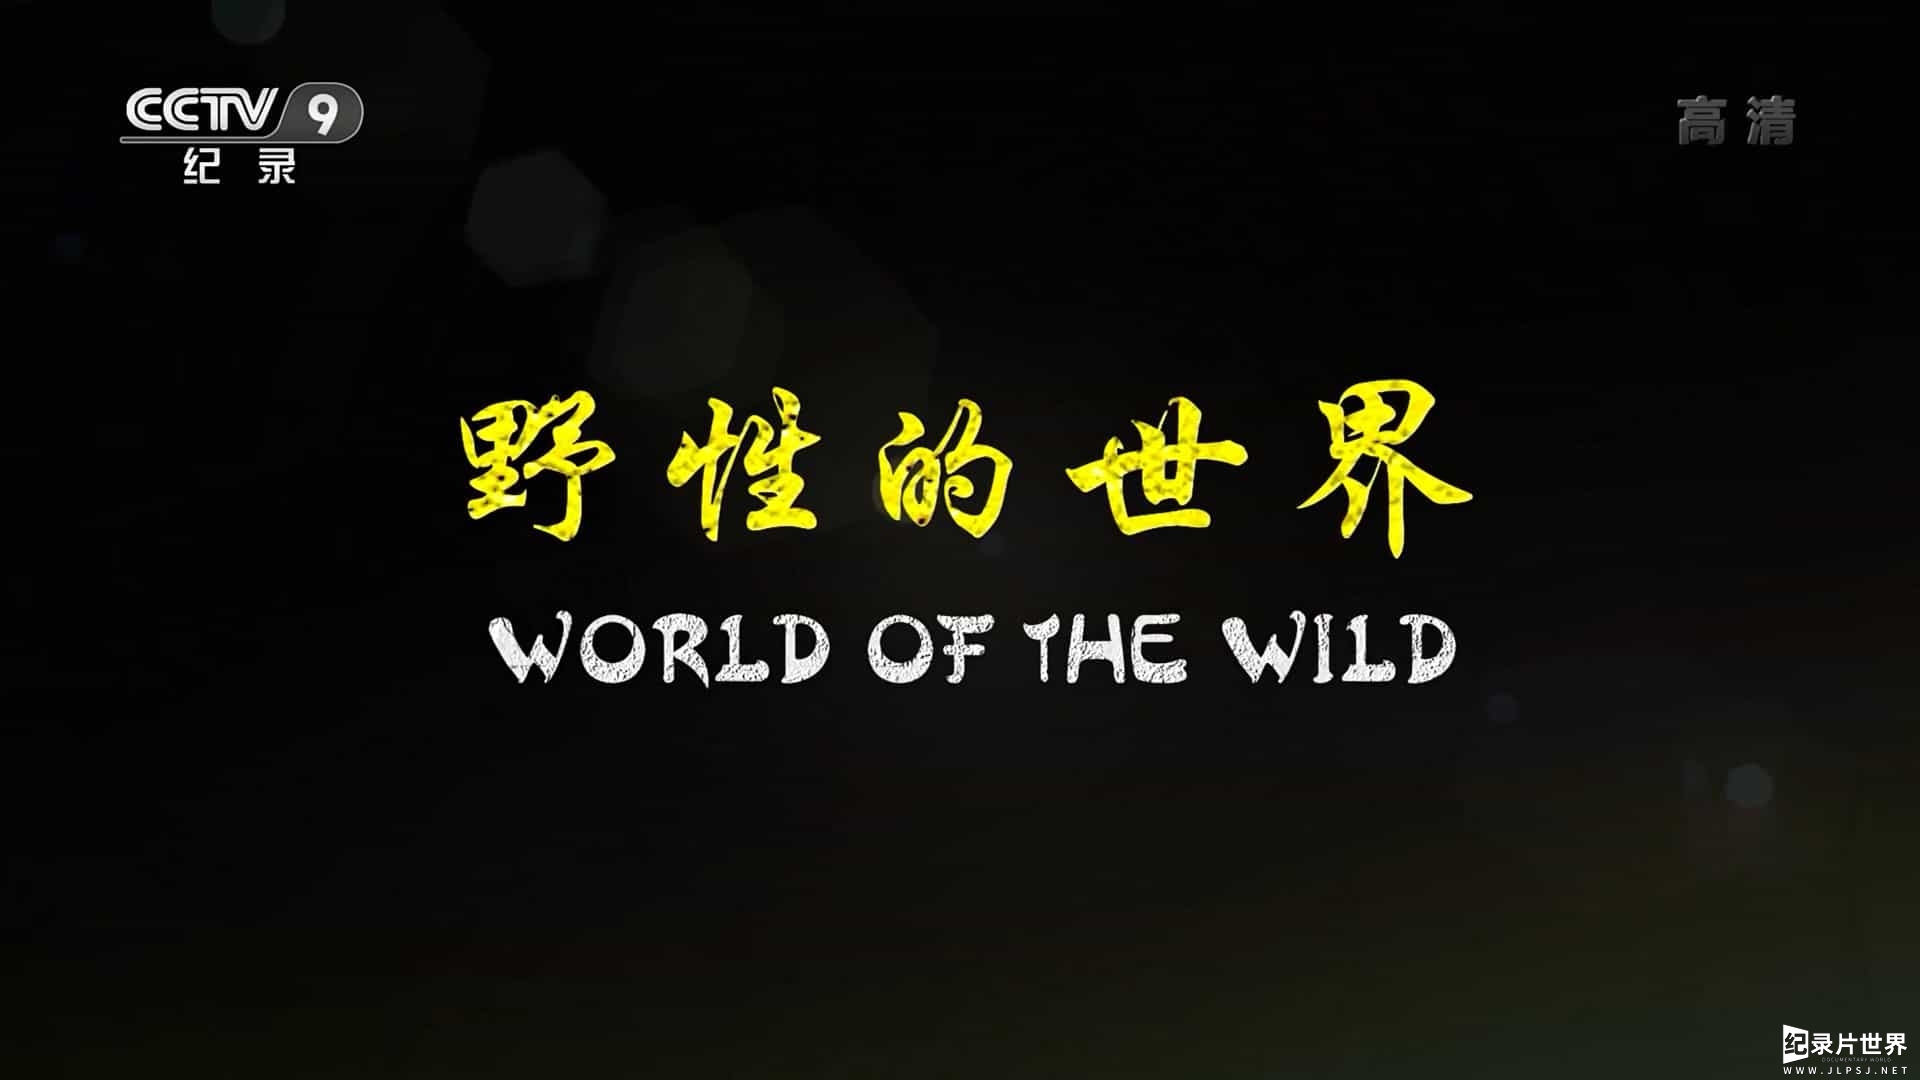 央视纪录片《野性的世界 World of the Wild》全6集